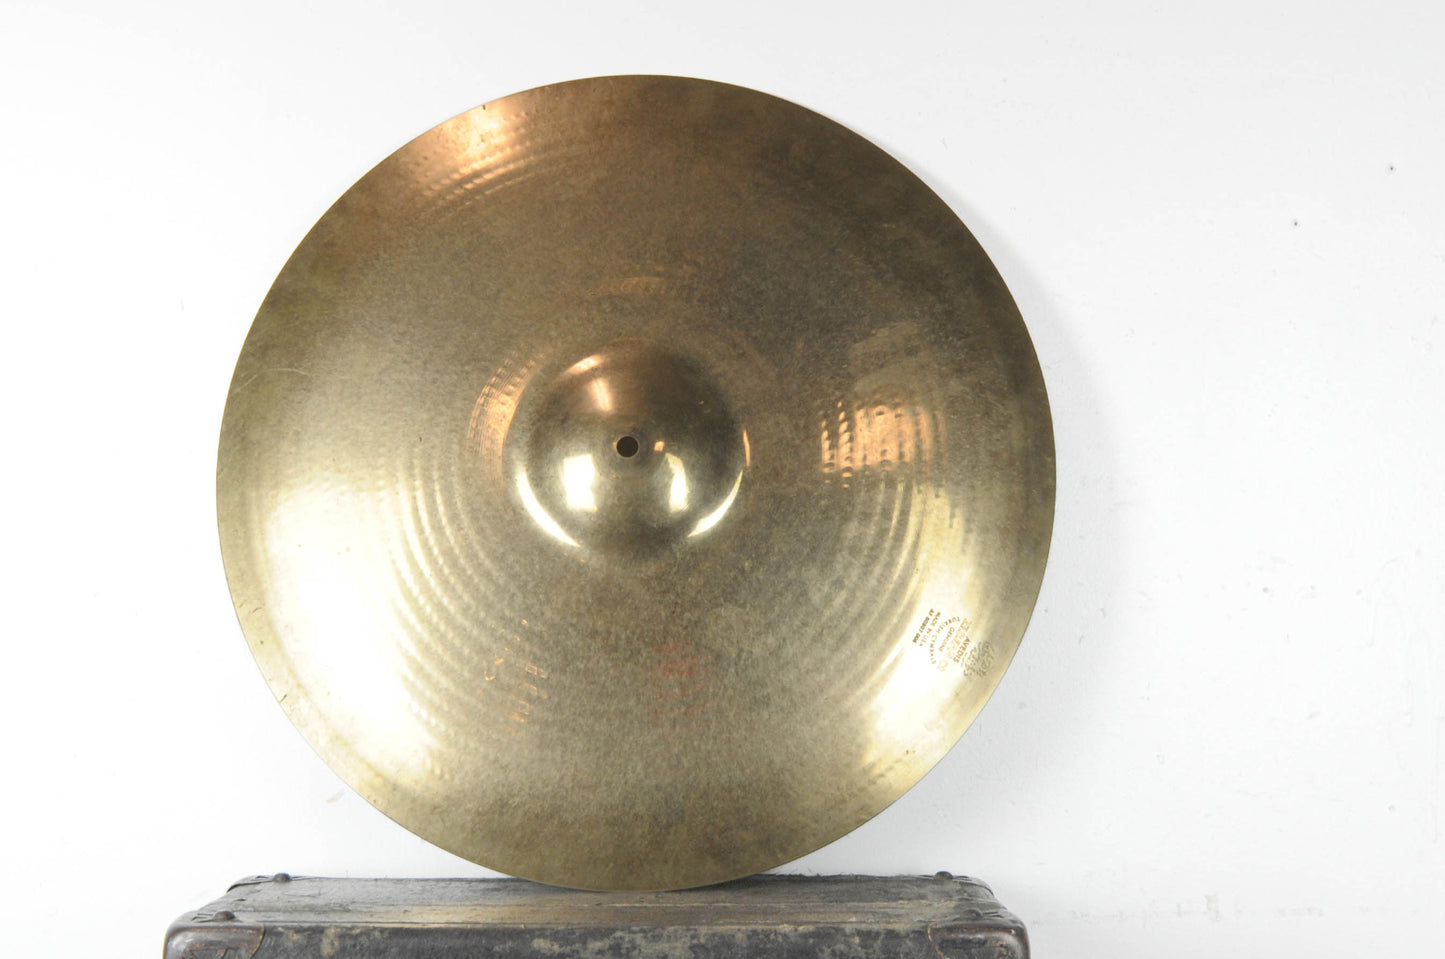 2016 Zildjian A Custom 20" Ping Ride Cymbal 2339g